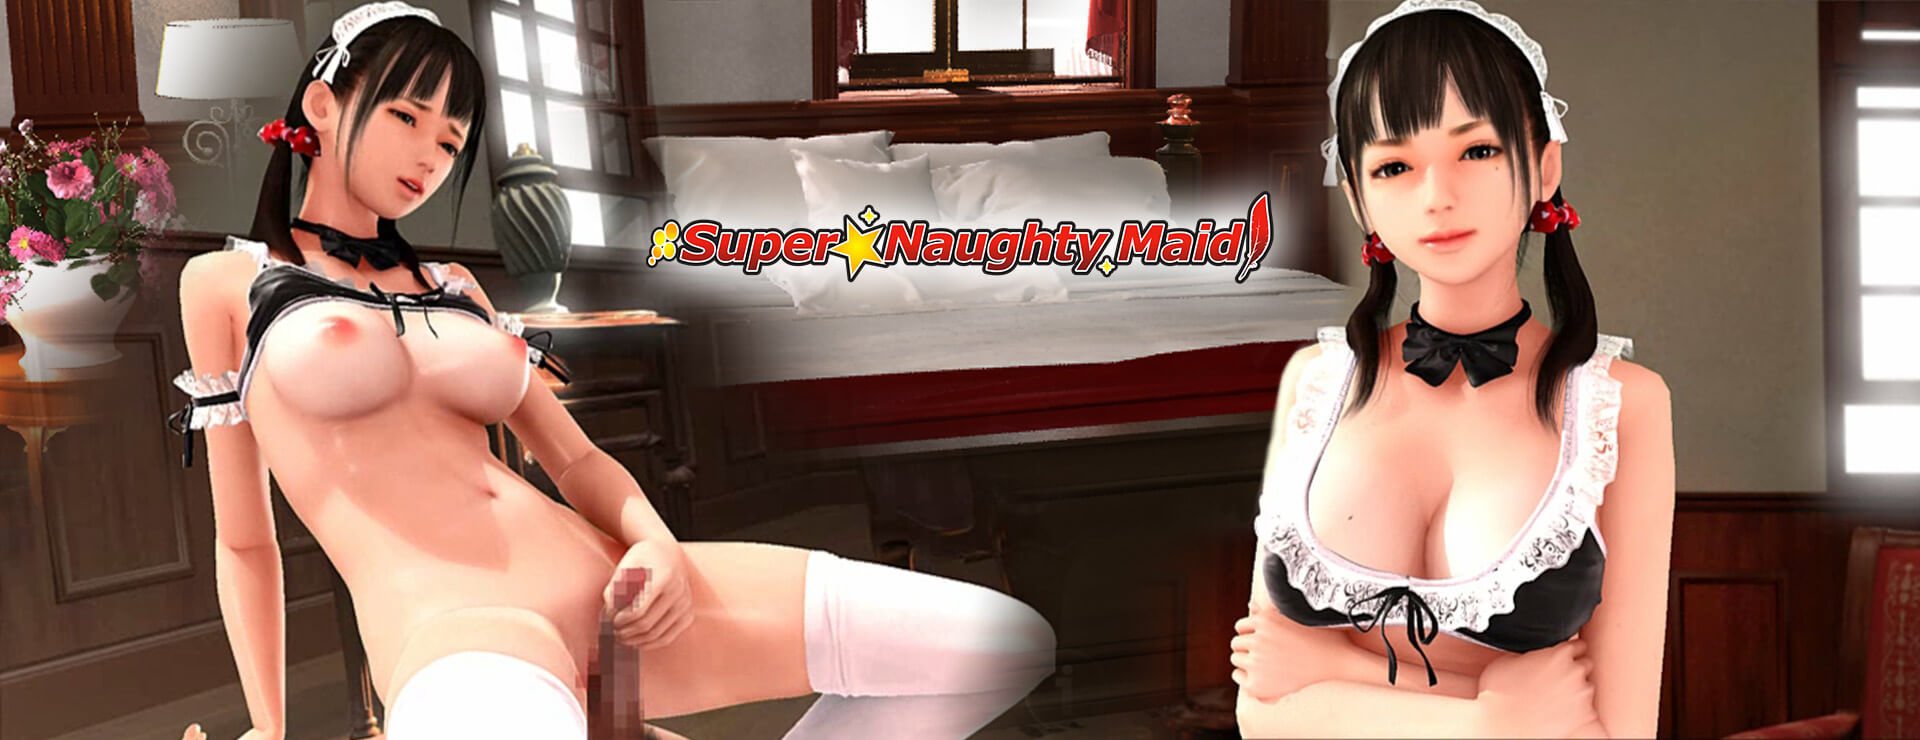 Super Naughty Maid 1 - Symulacja Gra